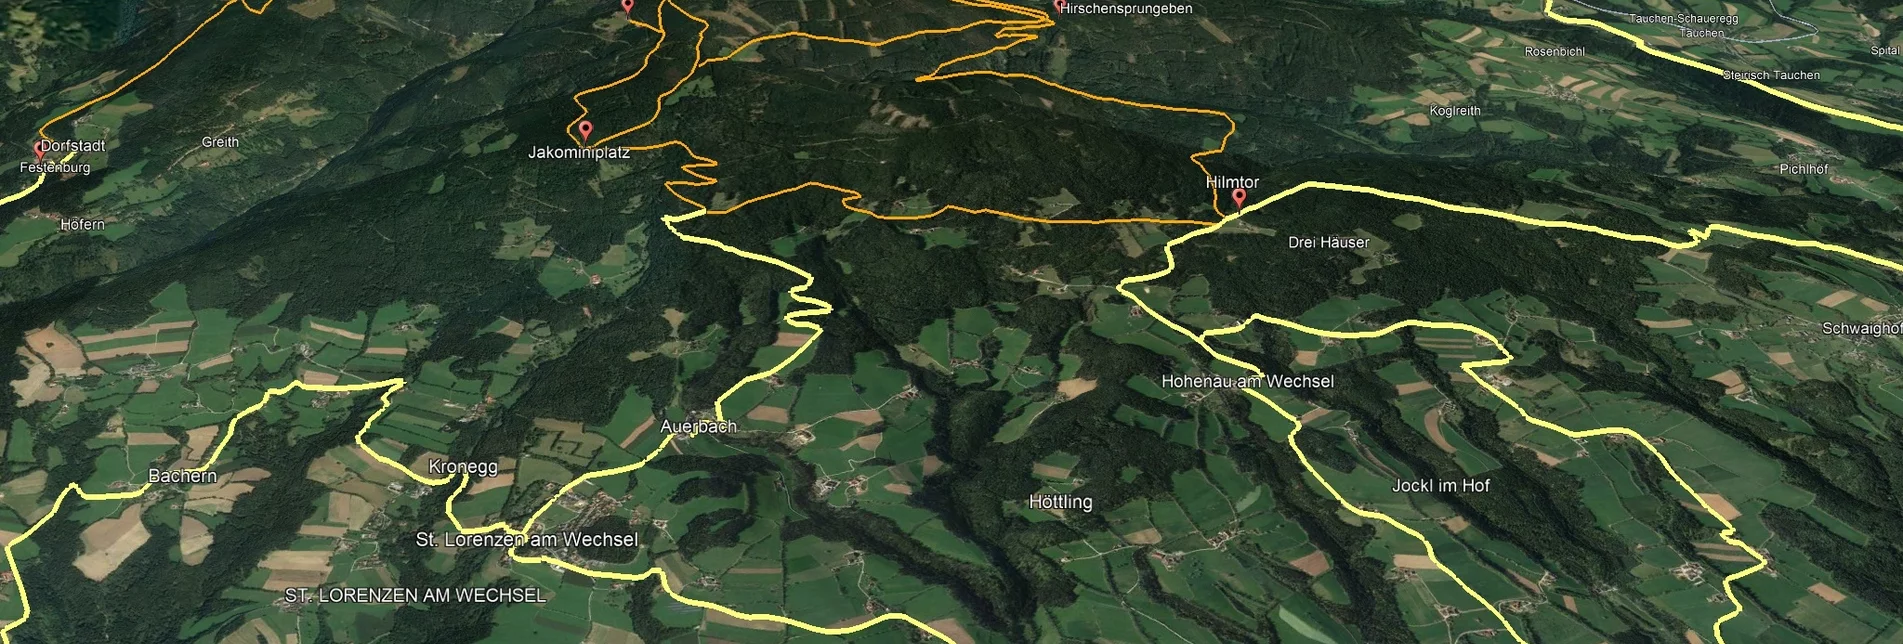 Mountainbike VORSCHAU Steirische Wexl Trails - Studentenkreuz Route - Touren-Impression #1 | © Verein Tourismusentwicklung Steirischer Wechsel